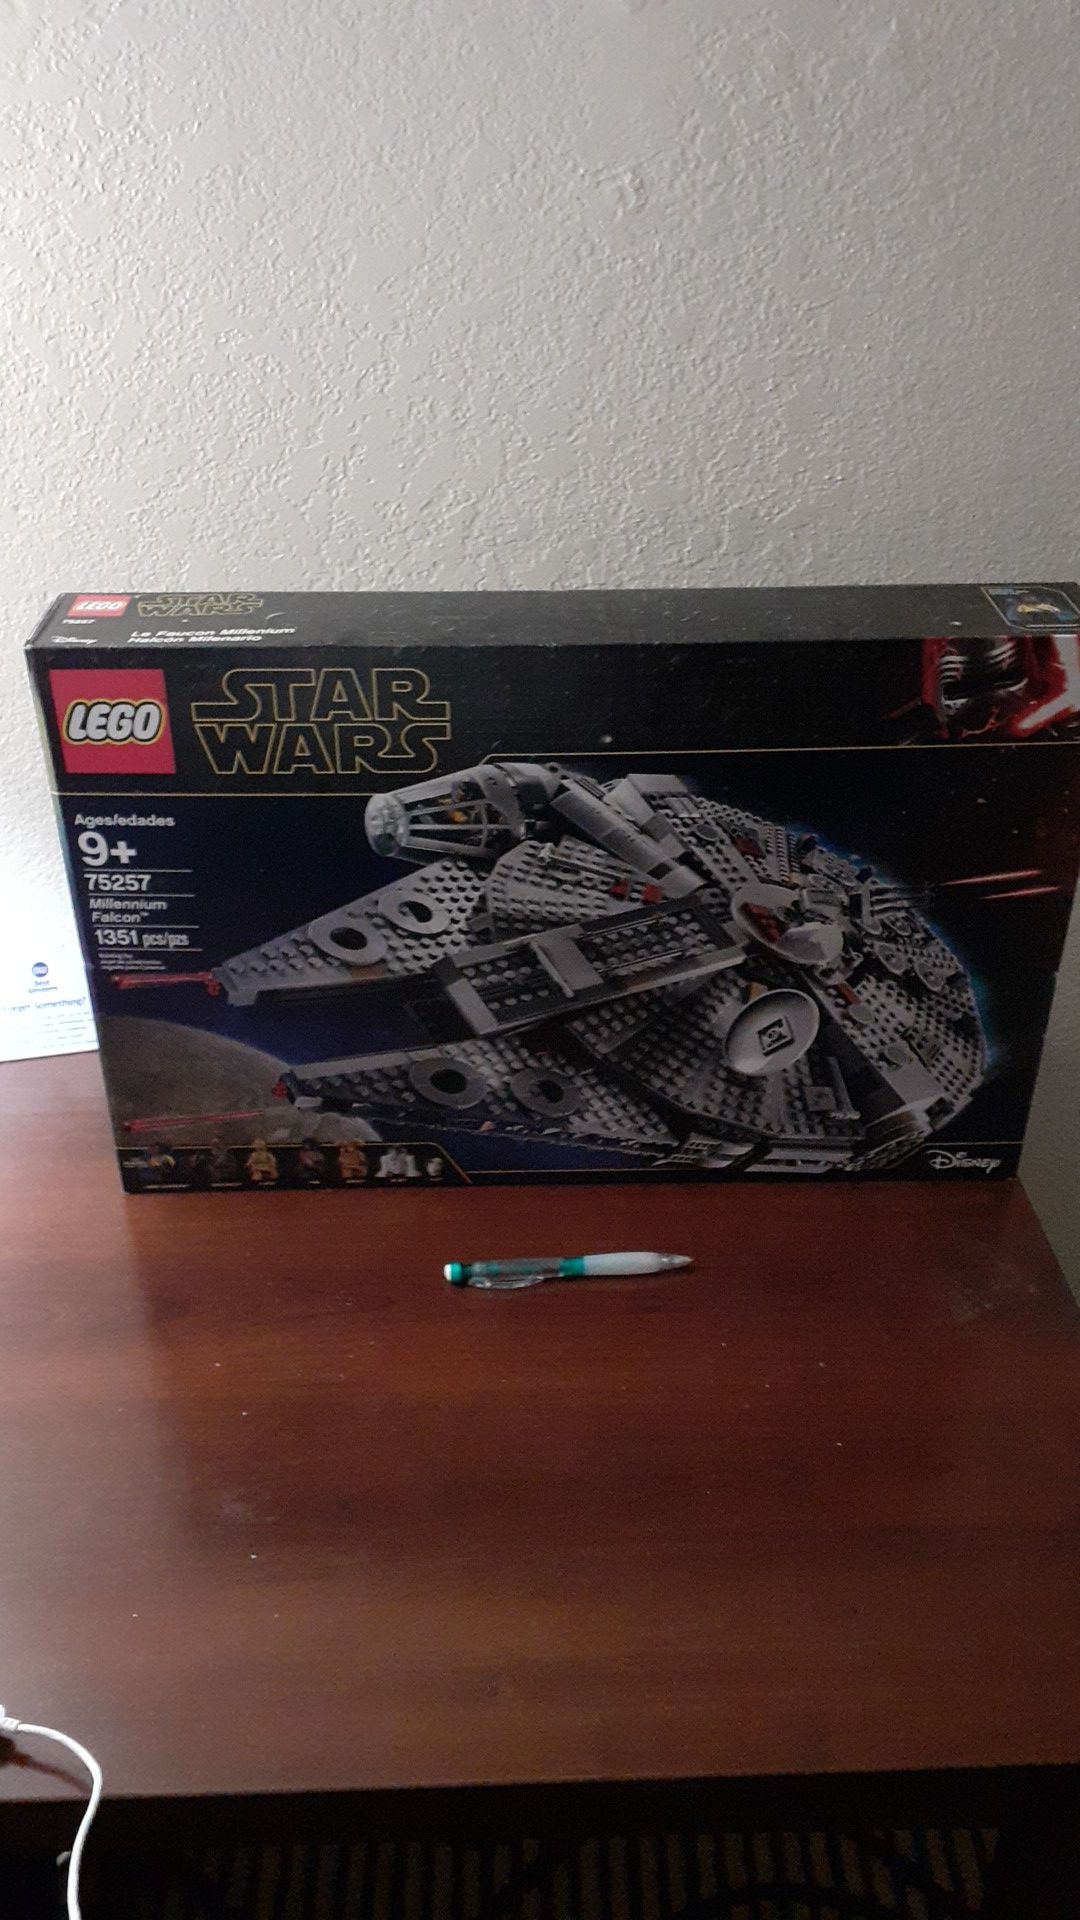 Star Wars Millennium Falcon Lego set